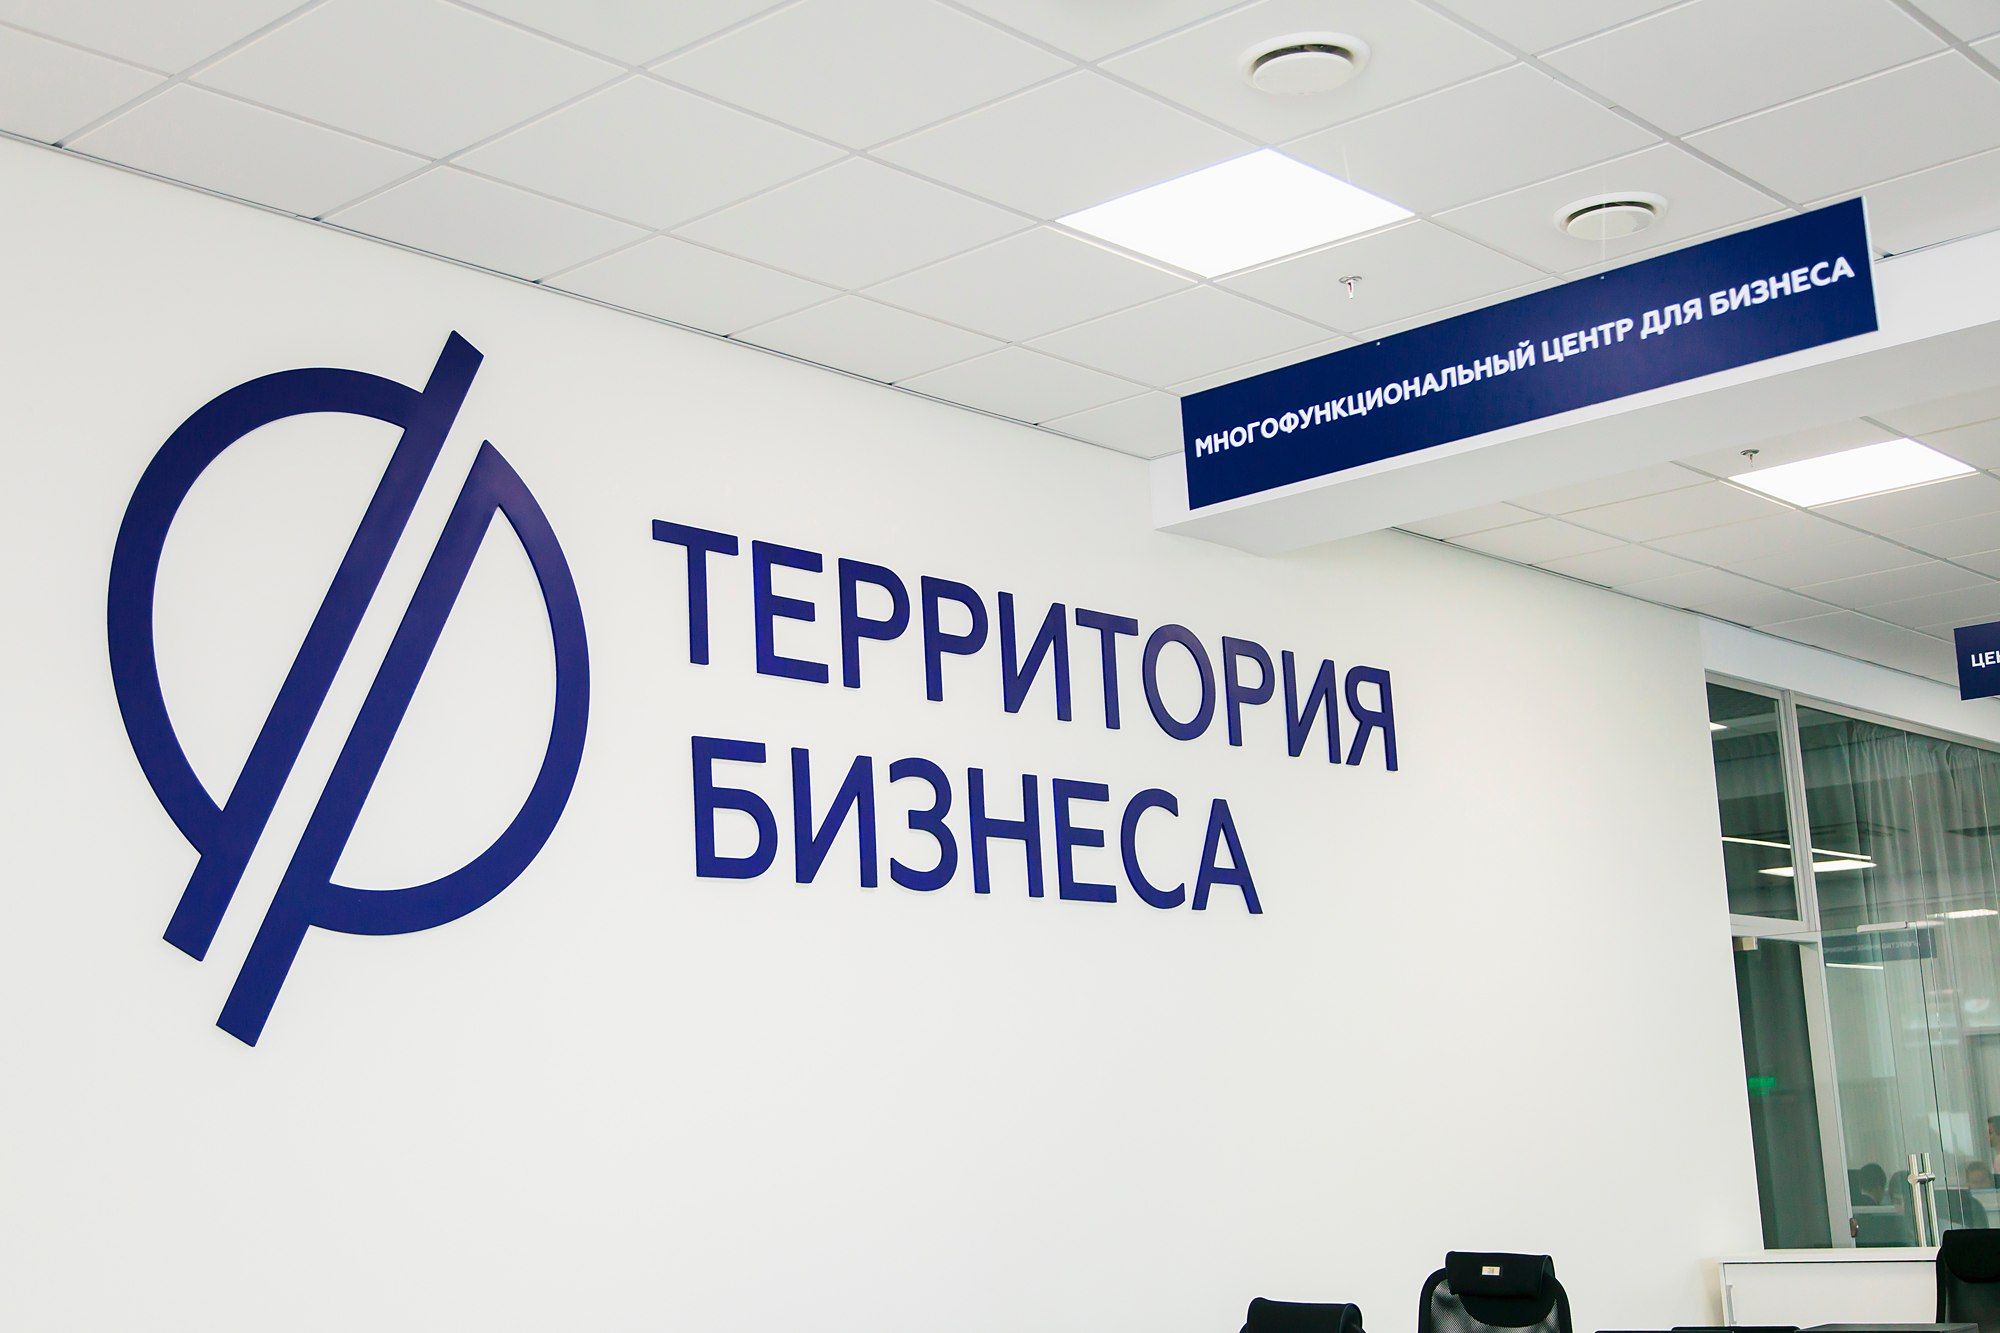 В Челябинской области открылся новый сервис в помощь предпринимателям